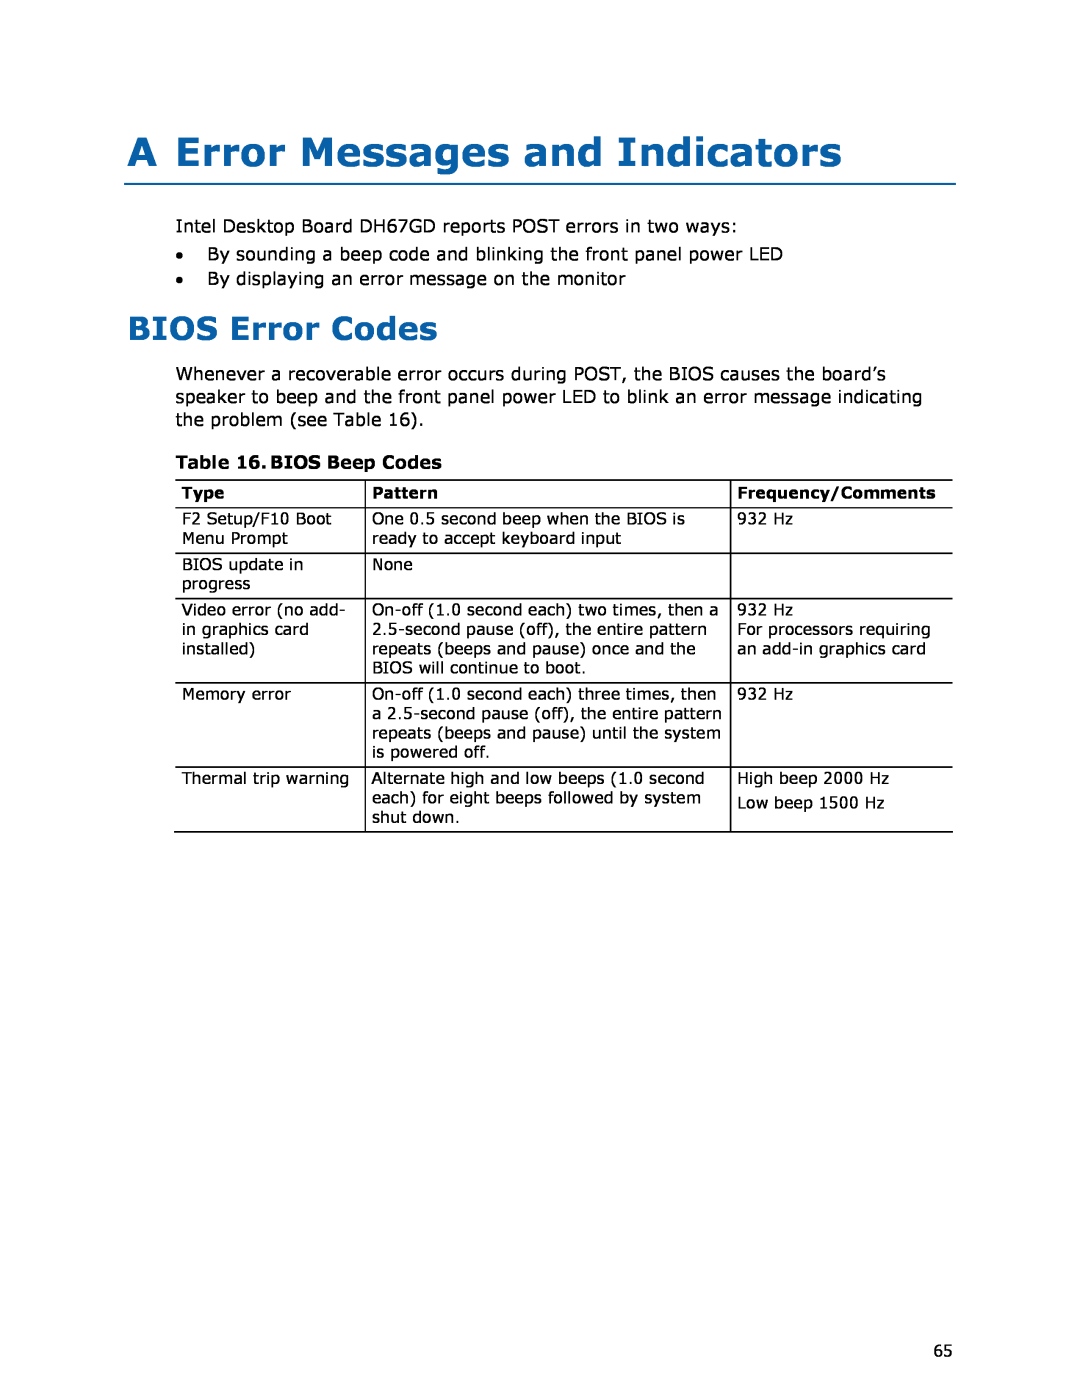 Intel G13841-001, BLKDH67GDB3 manual A Error Messages and Indicators, BIOS Error Codes, BIOS Beep Codes 